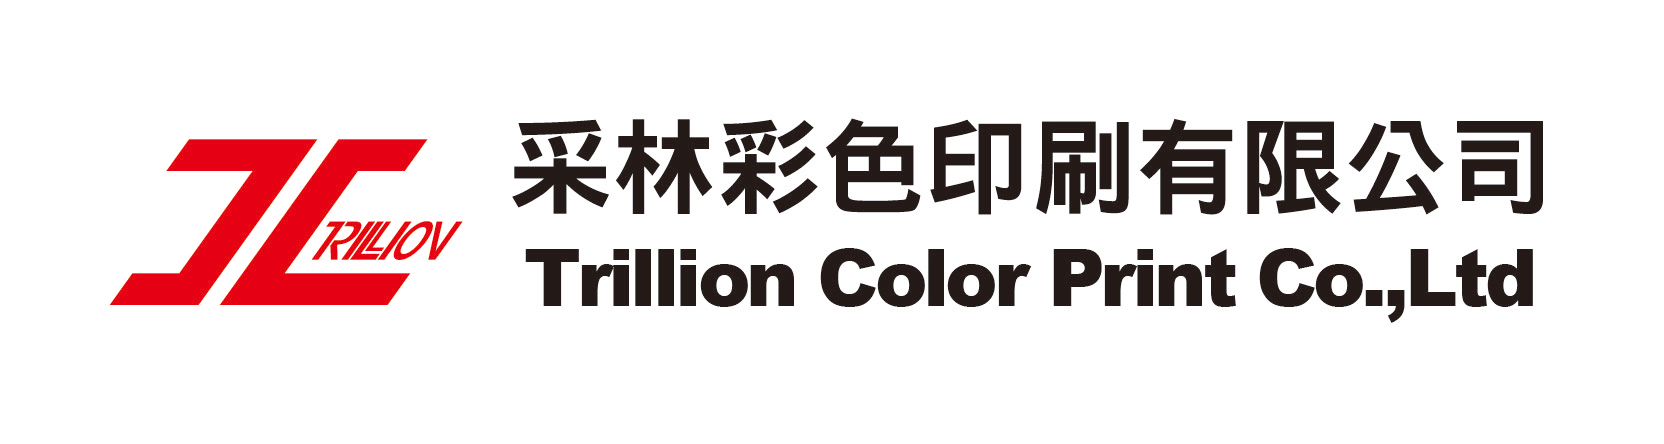 采林彩色印刷有限公司Logo